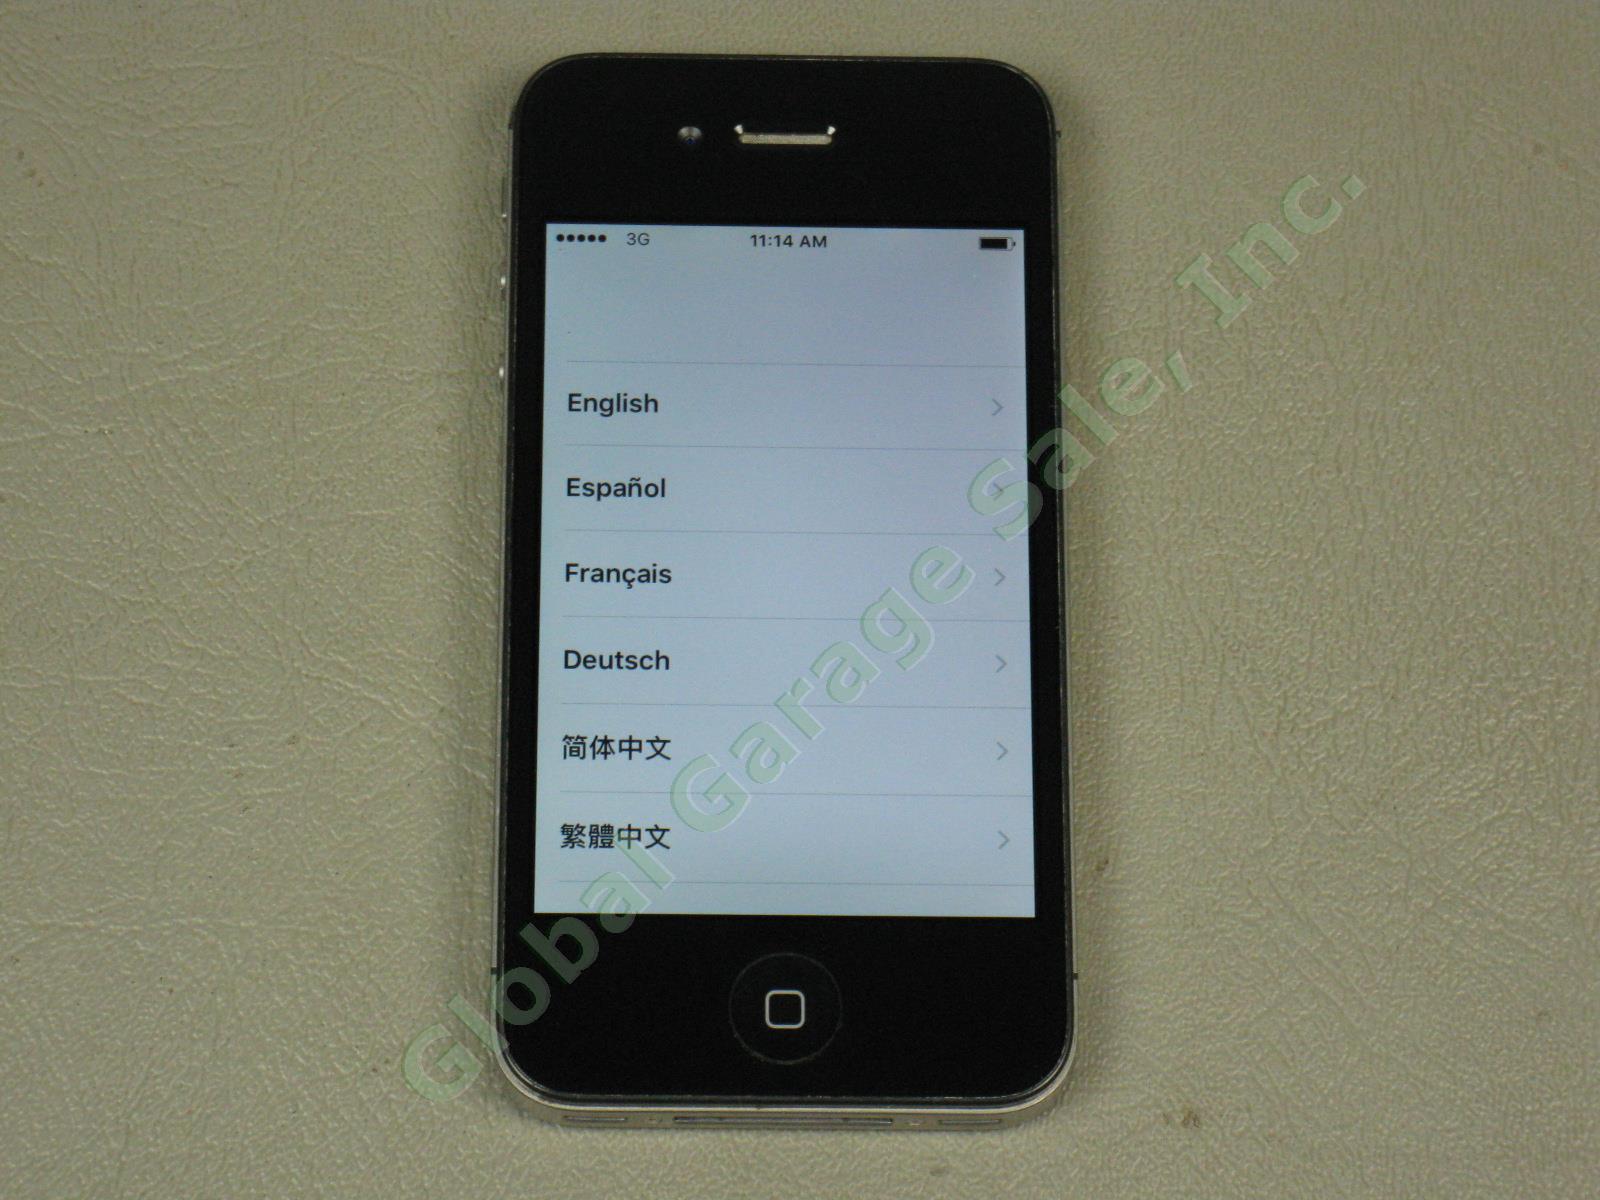 Apple iPhone 4s 16GB Black Model A1387 MD276LL/A Verizon Unlocked + Reset NO RES 1